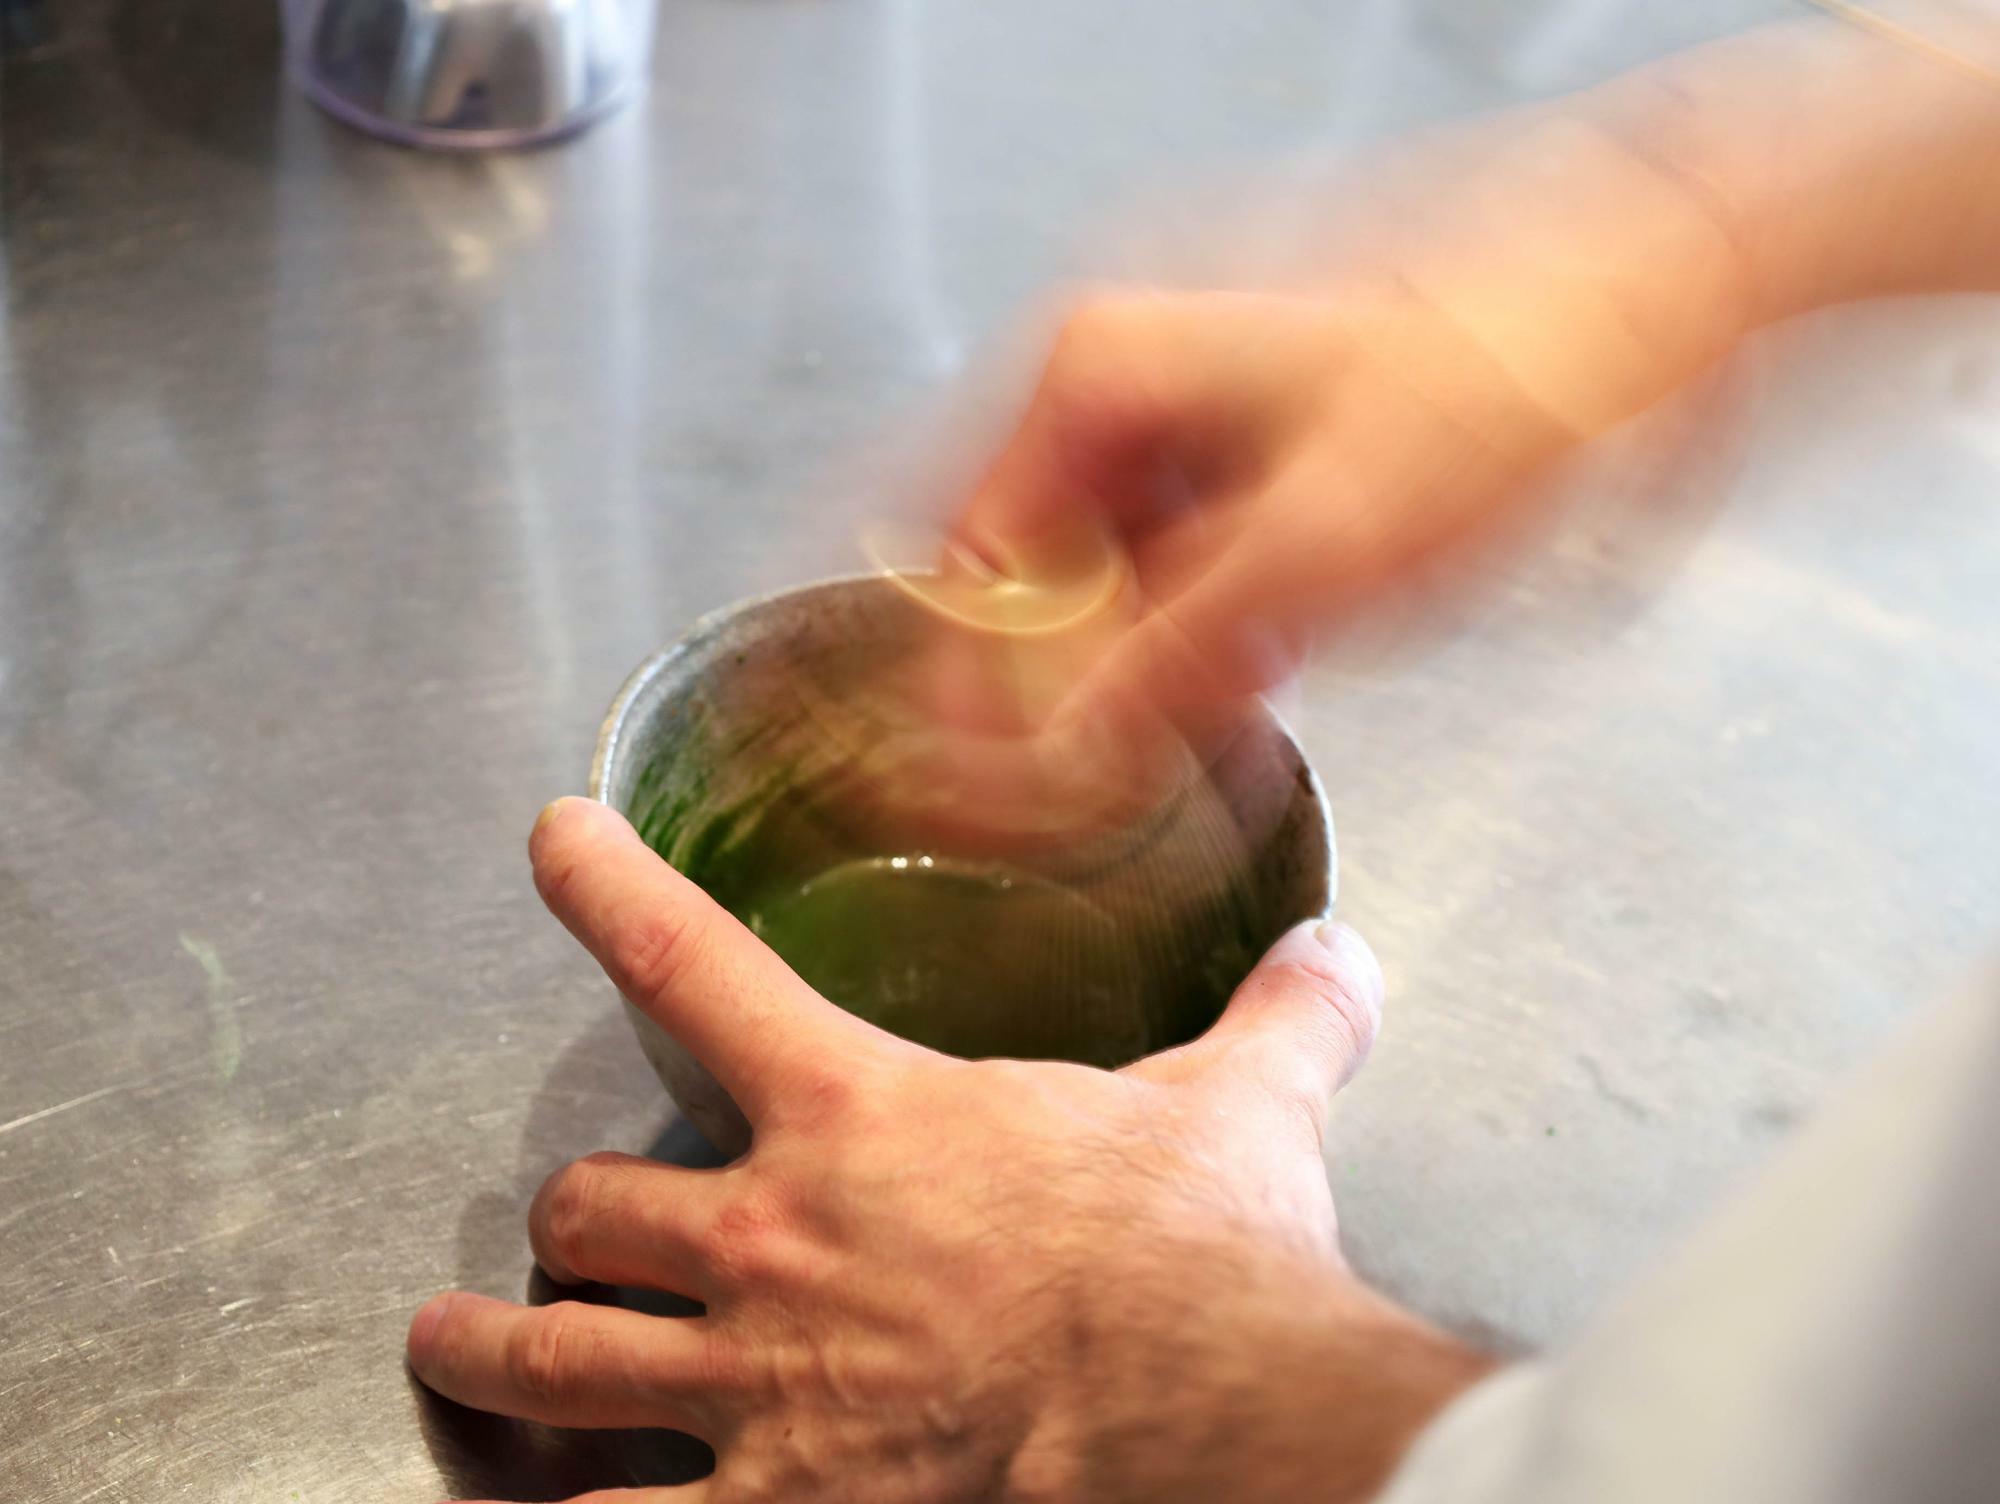 茶道をたしなむ由井さんが抹茶を点てる姿は、所作も美しく凛とした雰囲気